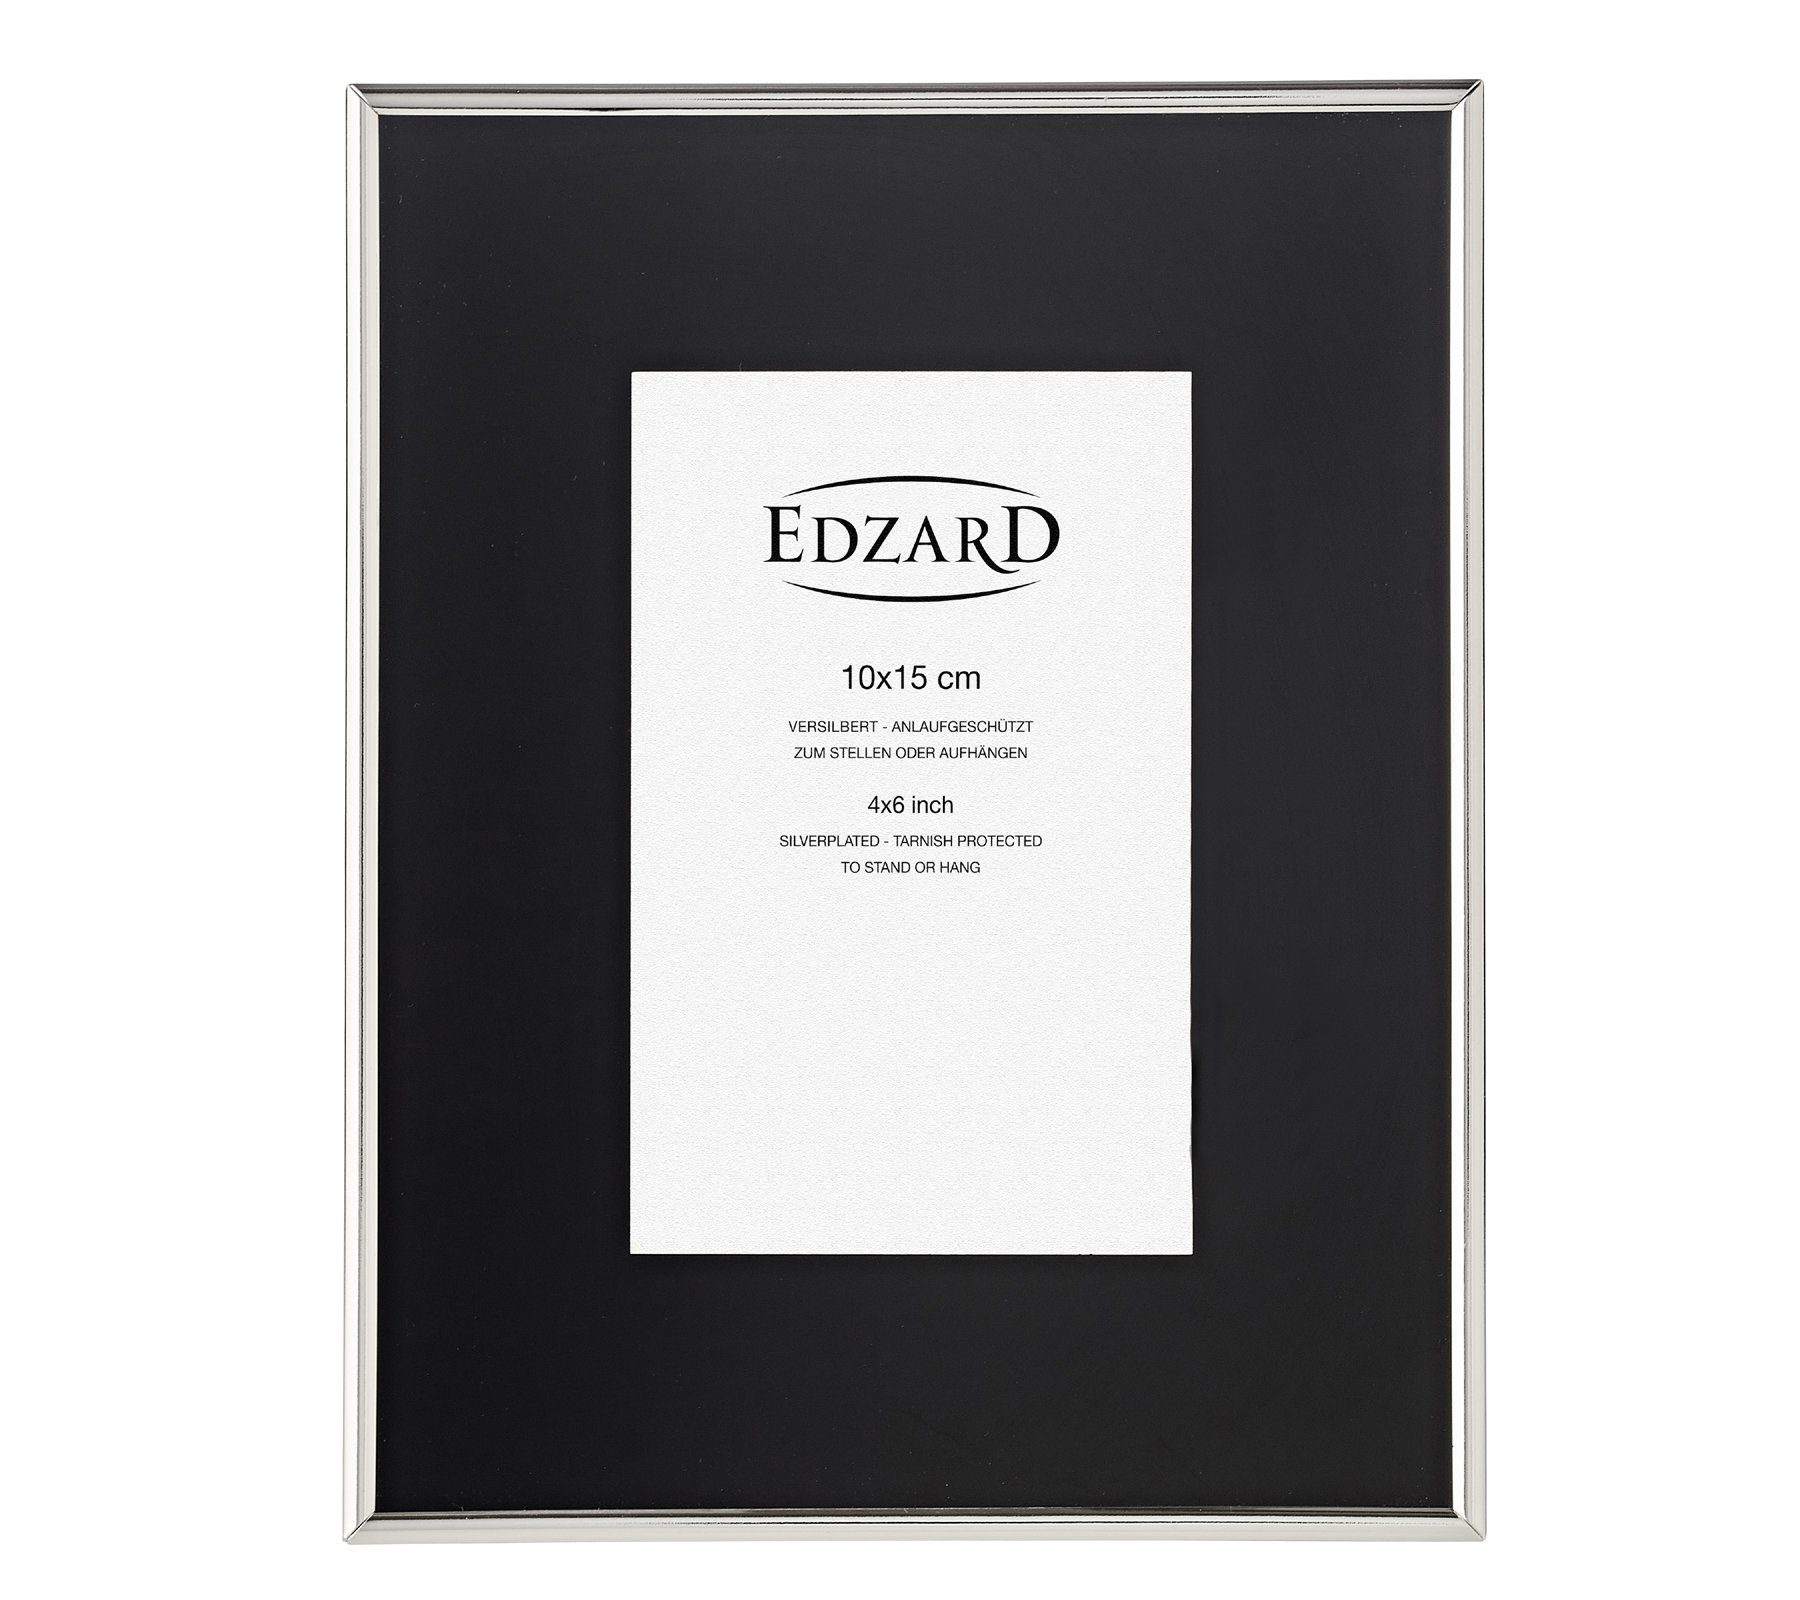 Foto anlaufgeschützt, cm versilbert und Bilderrahmen EDZARD für Elda, 10x15